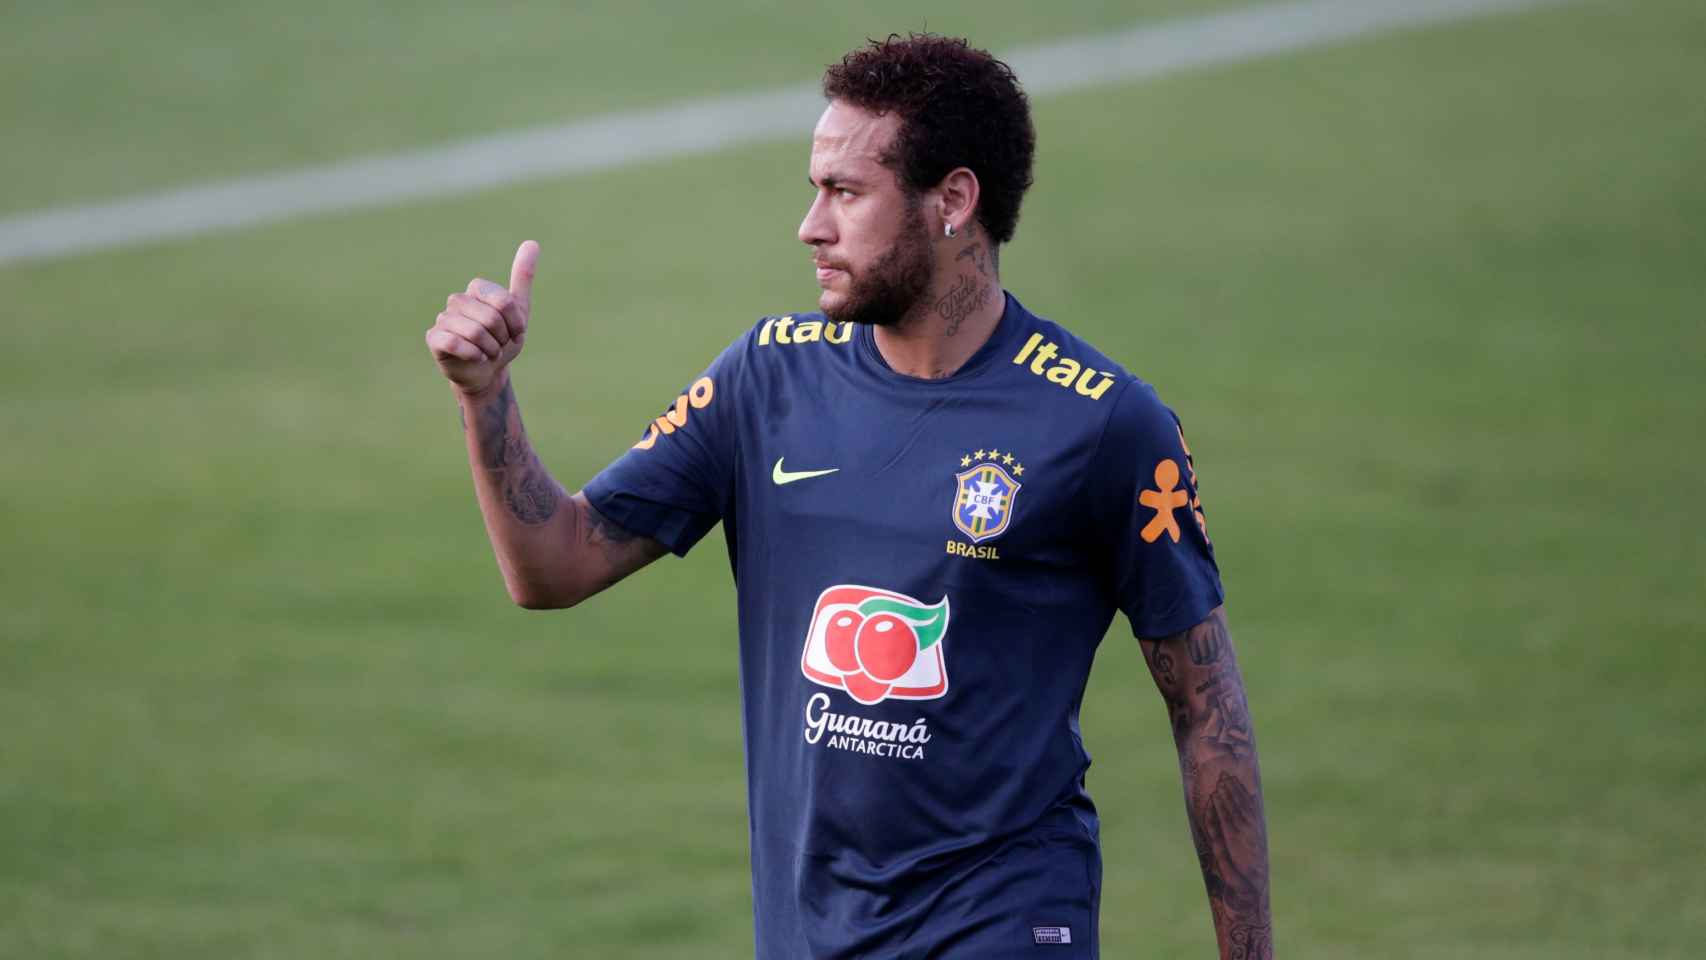 Neymar entrena con Brasil